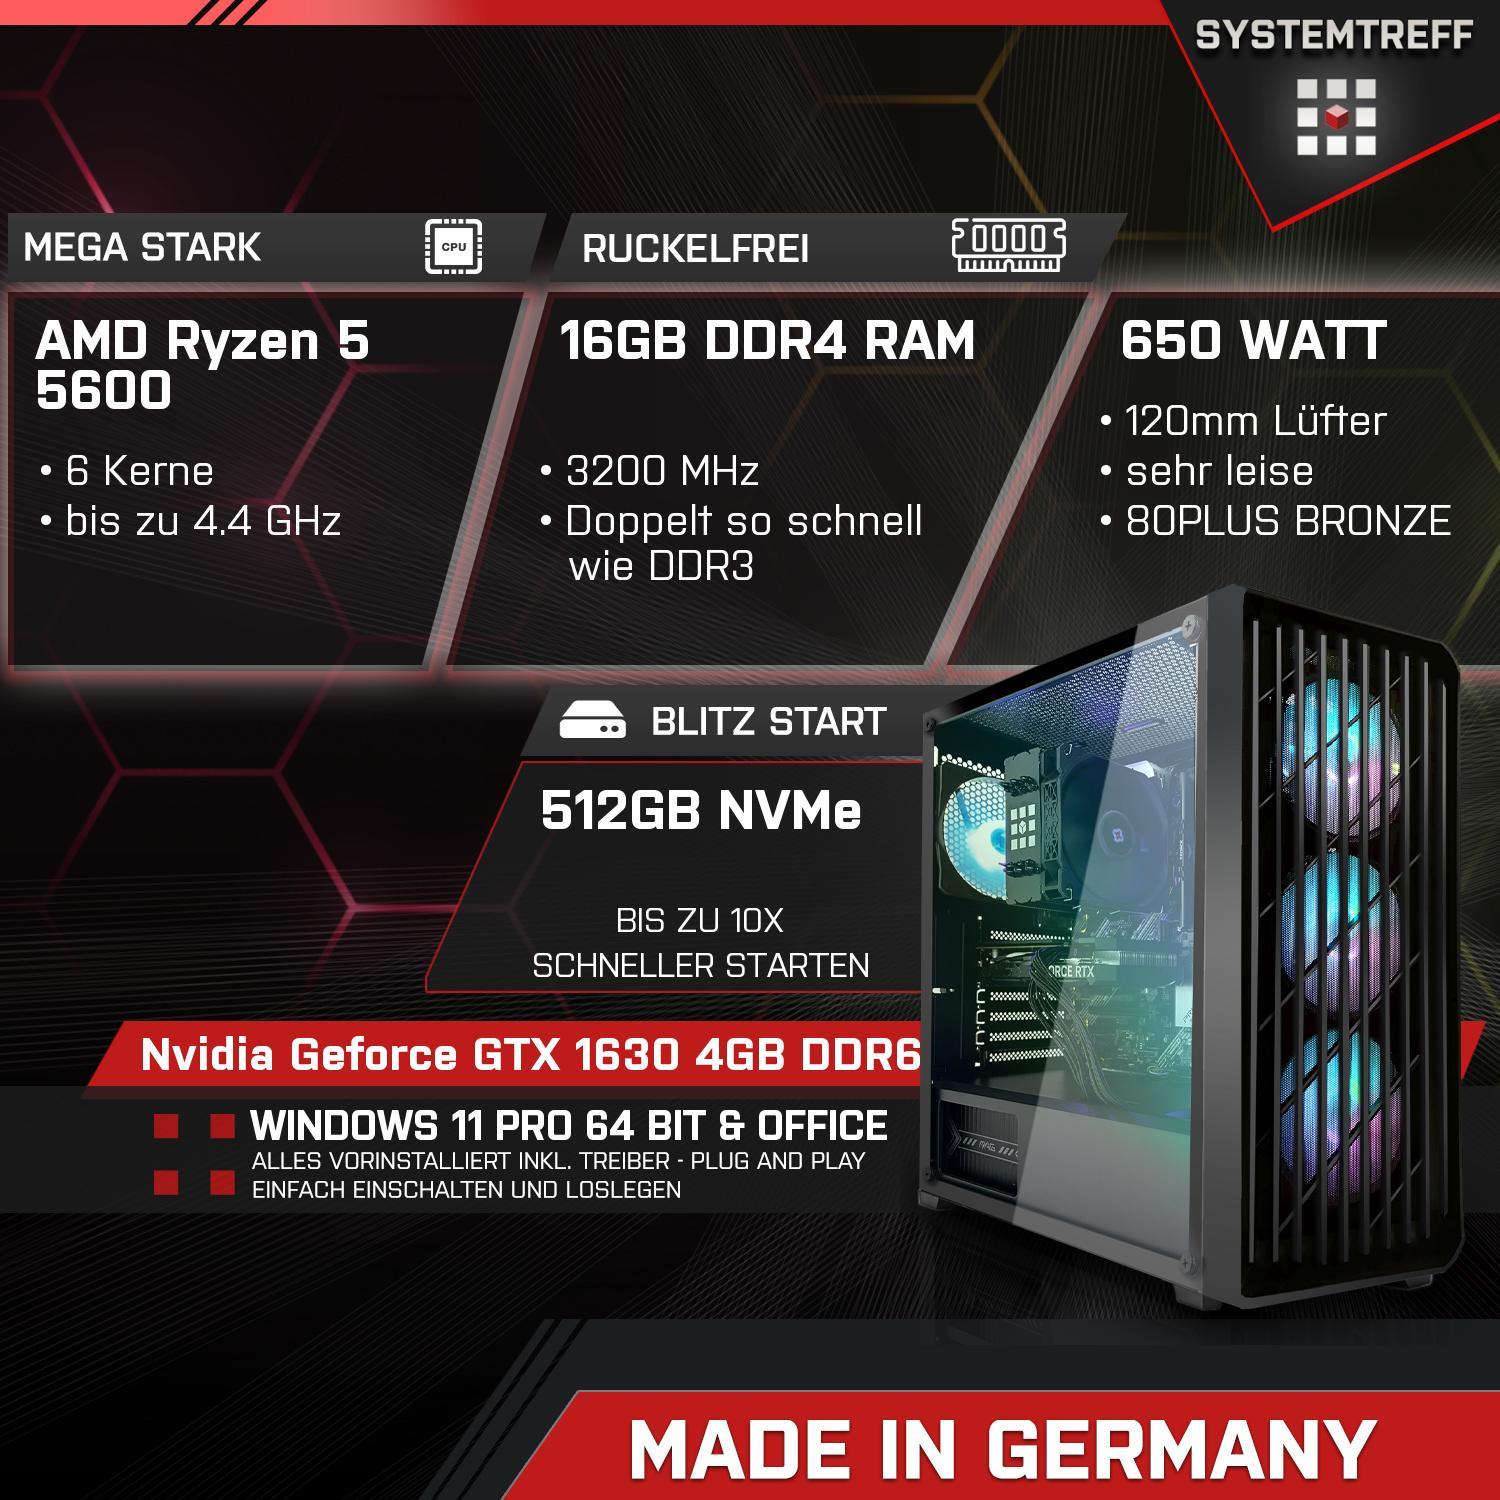 SYSTEMTREFF Gaming Komplett AMD Ryzen 16 Nvidia GB mit GTX Geforce 512 PC GB 1630 4 mSSD, 4GB, 5600, 5600 RAM, 5 Komplett GB Prozessor